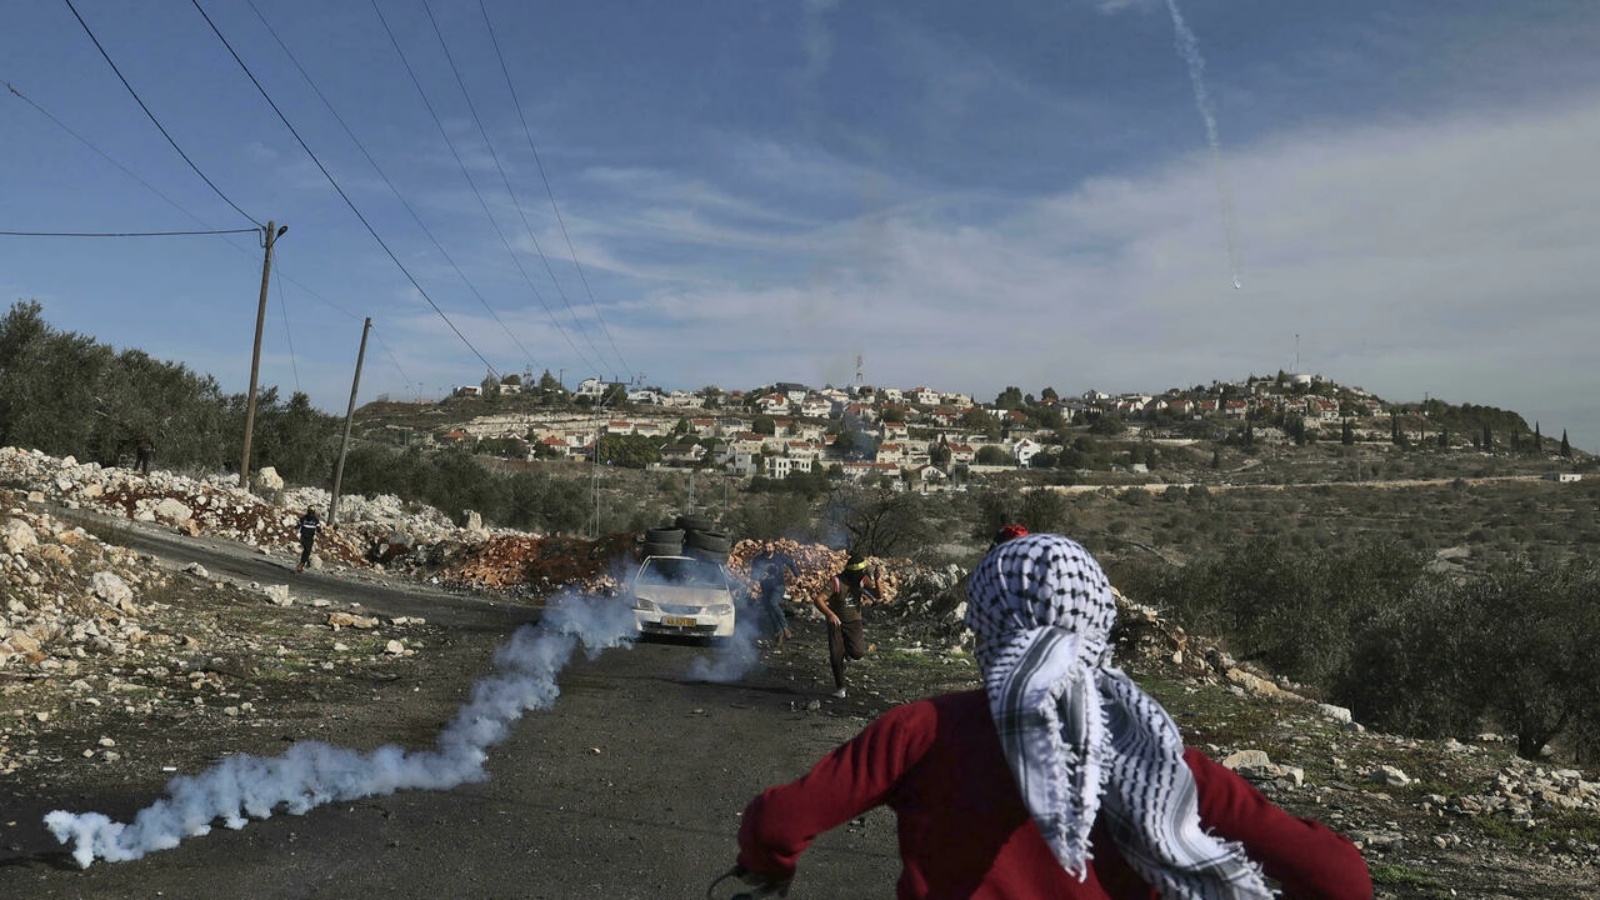 مواجهات بين فلسطينيين وقوى أمنية إسرائيلية في قرية كفر قدوم بالقرب من مستوطنة كدوميم في الضفة الغربية المحتلة في 10 كانون الأول/ديسمبر 2021 